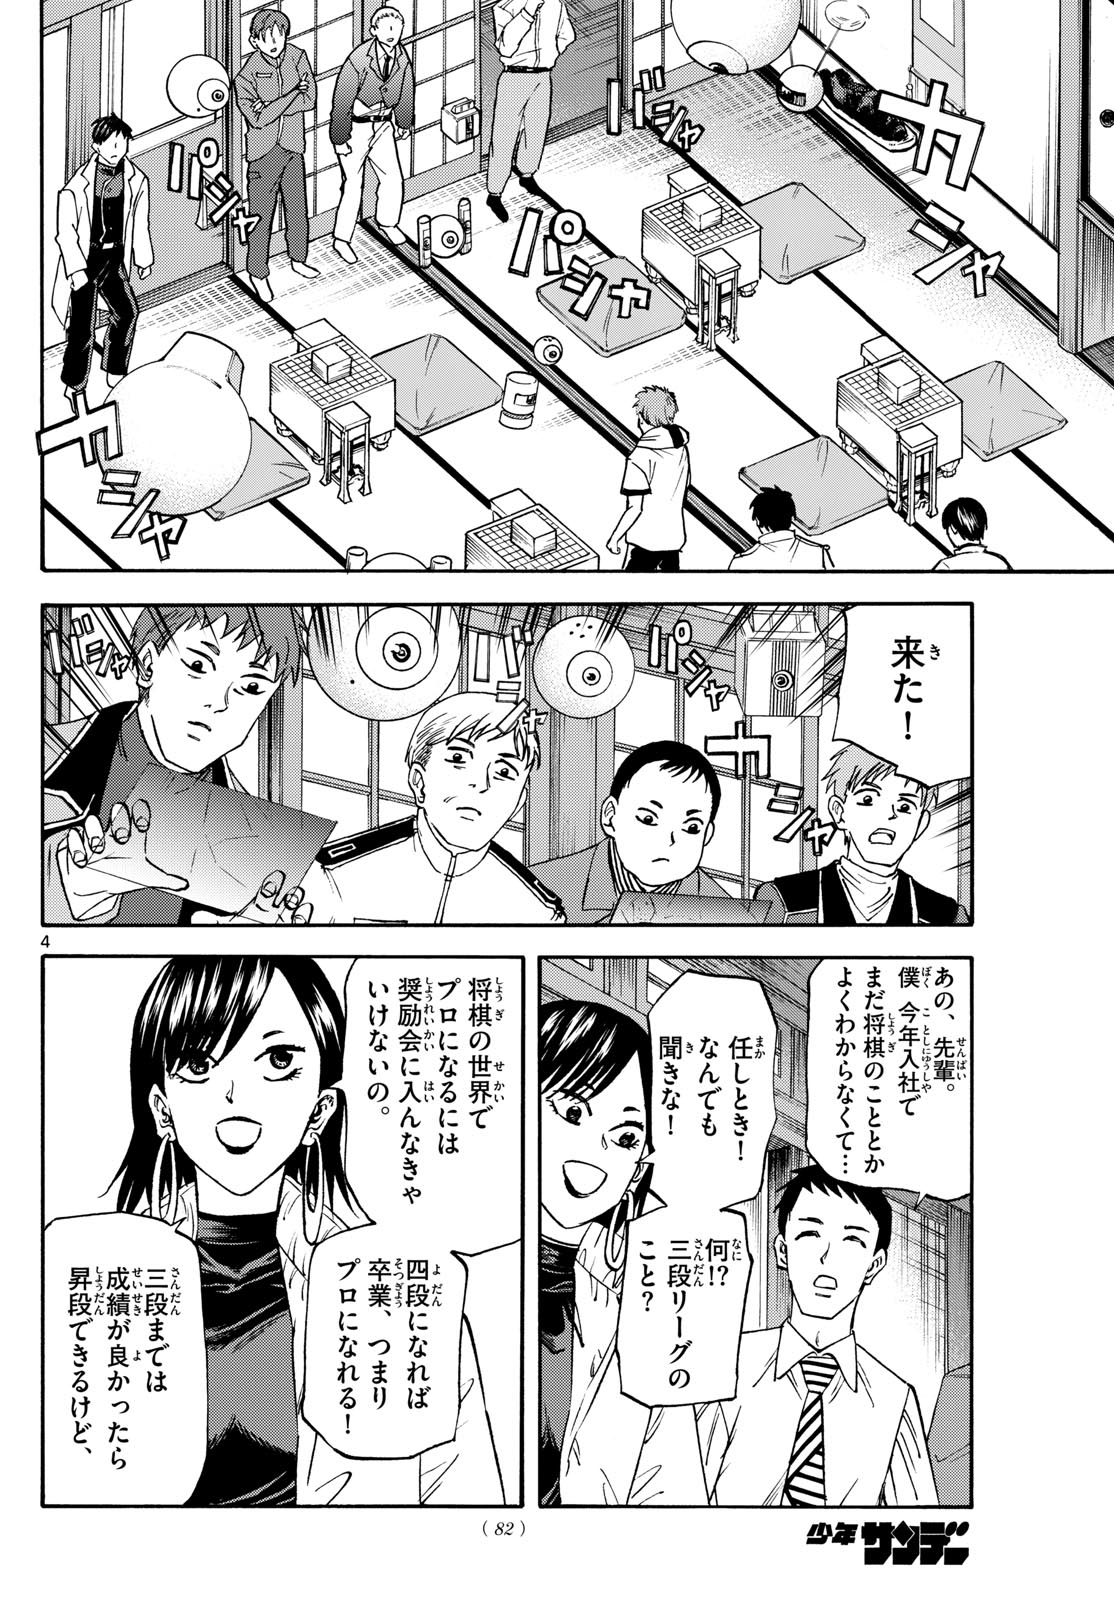 Tatsu to Ichigo - Chapter 185 - Page 4